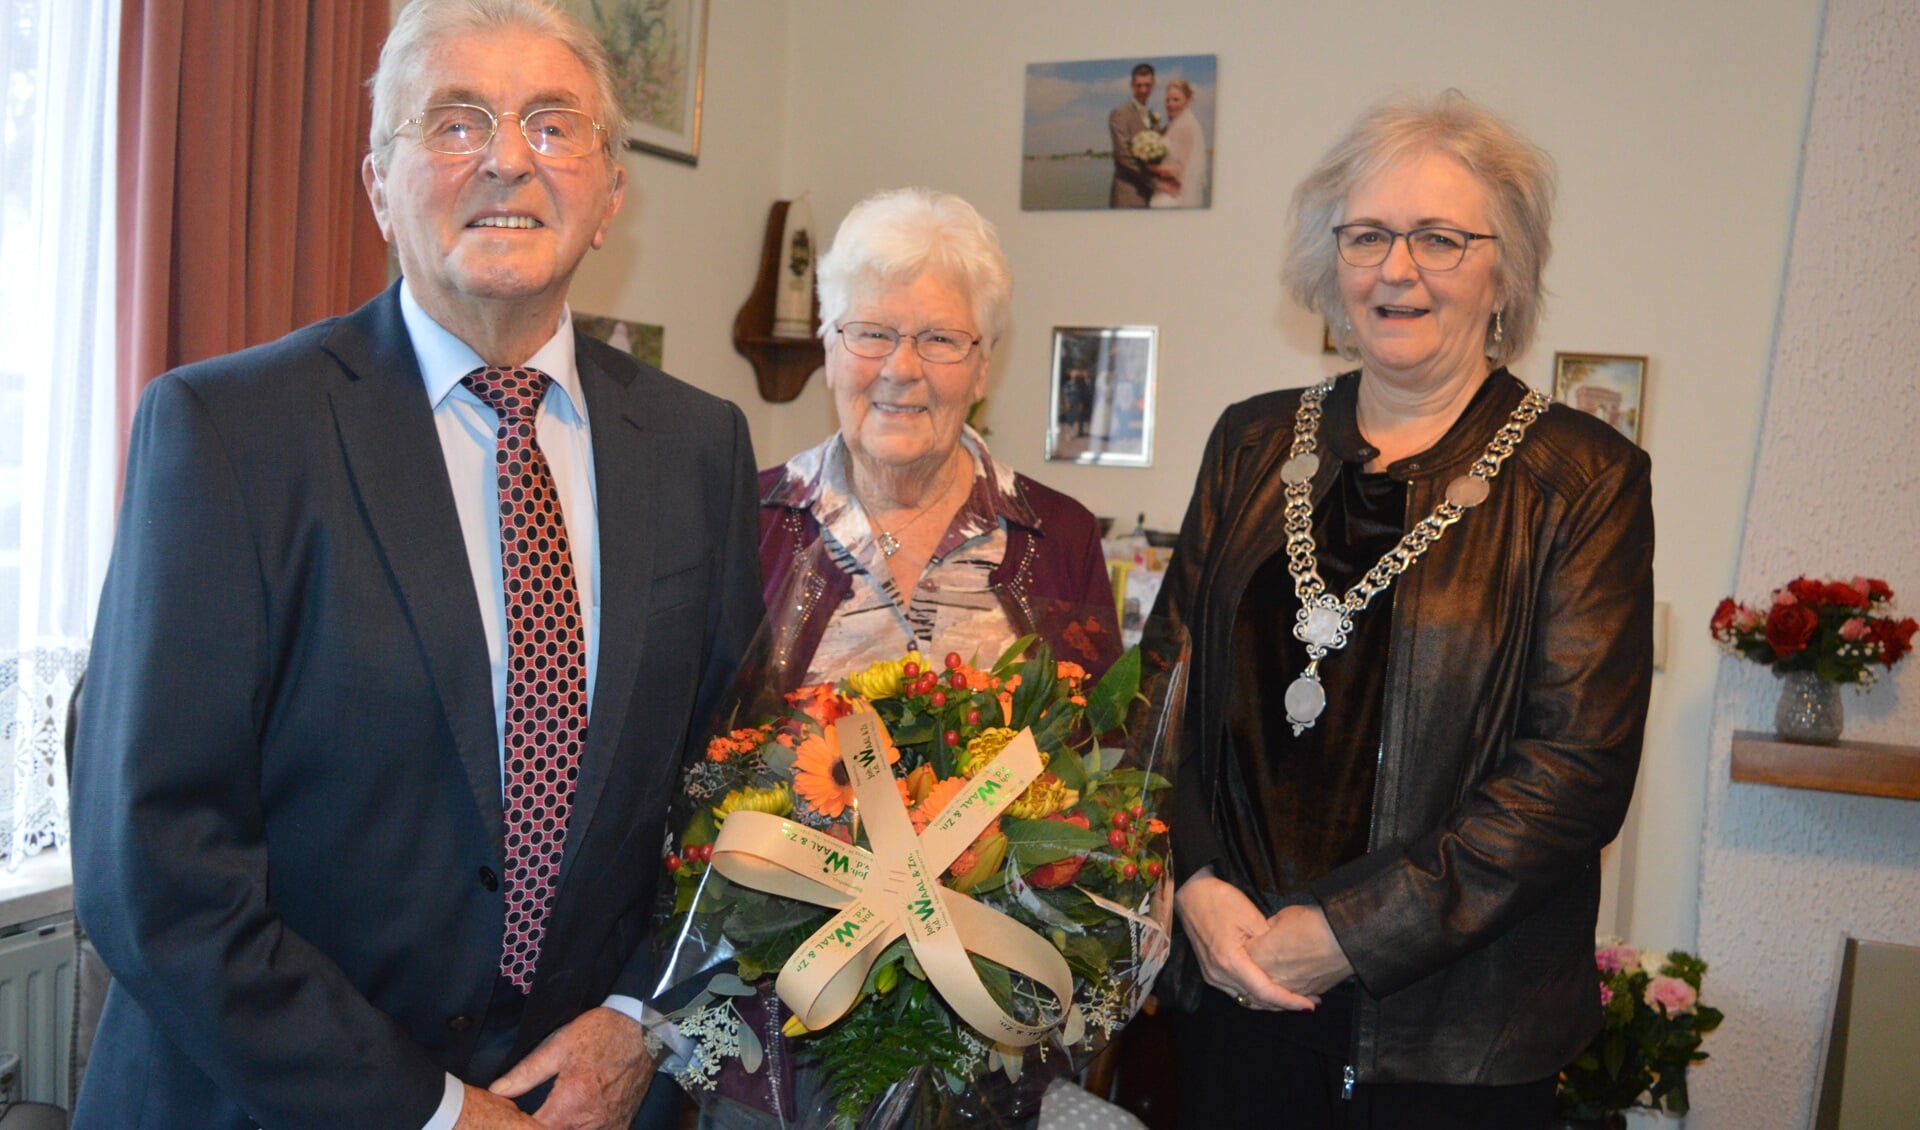 Burgemeester Attema zette het briljanten echtpaar Meijer in de bloemen